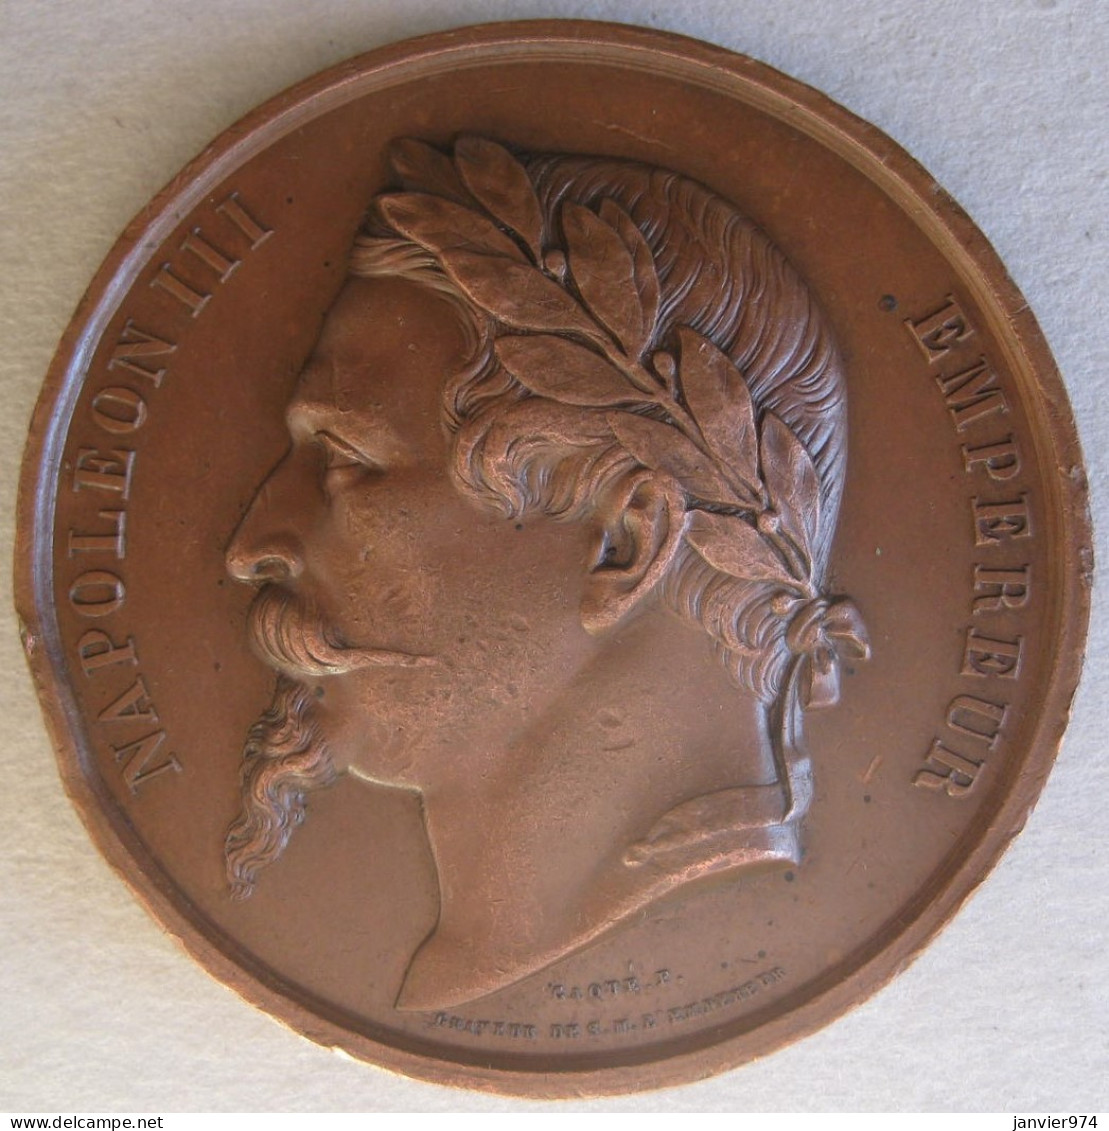 Médaille En Cuivre Napoléon III , Concours Agricole LAVAL 1862 Animaux Reproducteurs, Gravée Par Caque - Royaux / De Noblesse